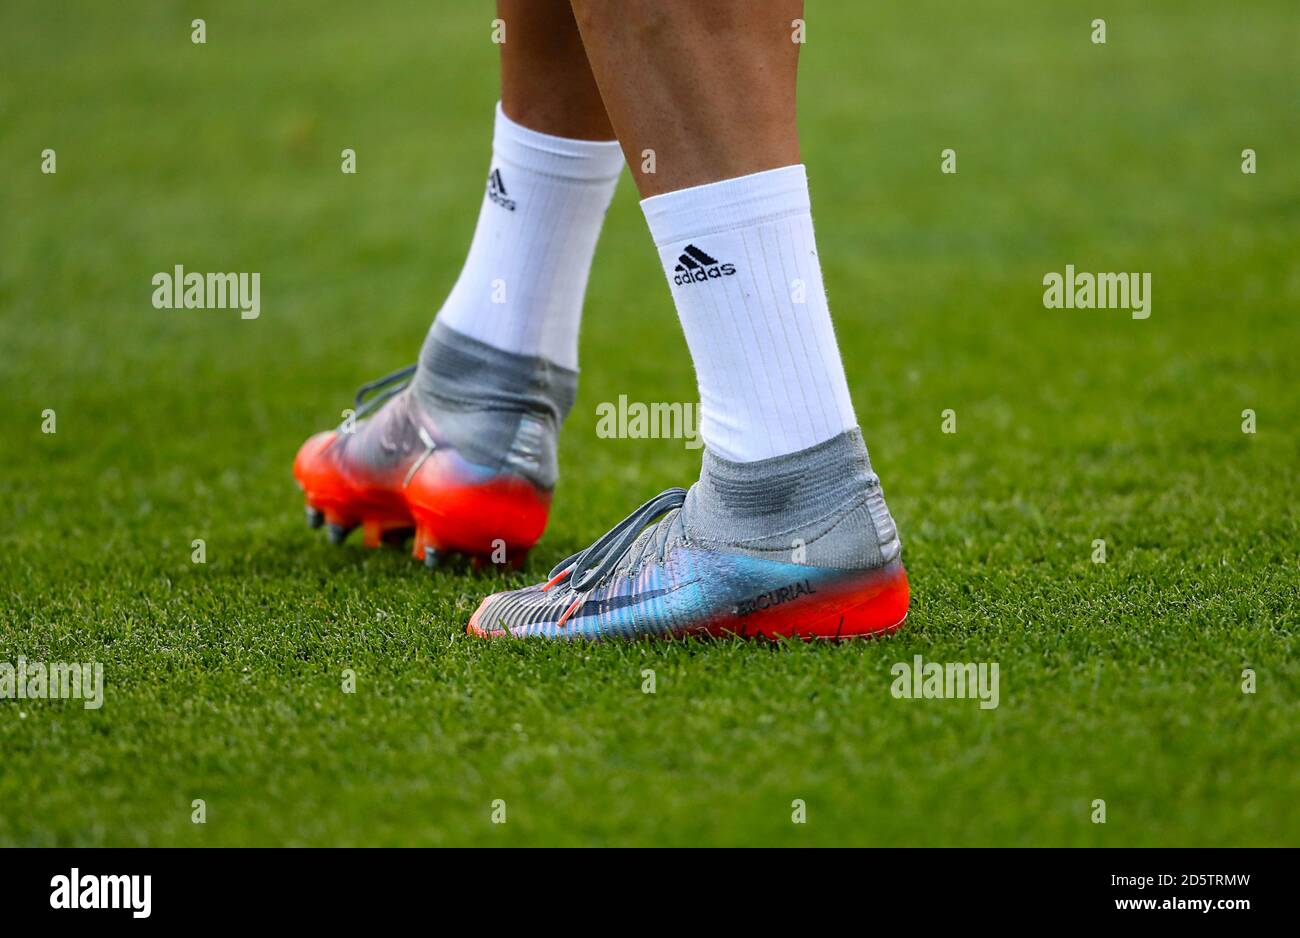 Detalle de las zapatillas Cristiano Ronaldo del Real Madrid Fotografía de - Alamy